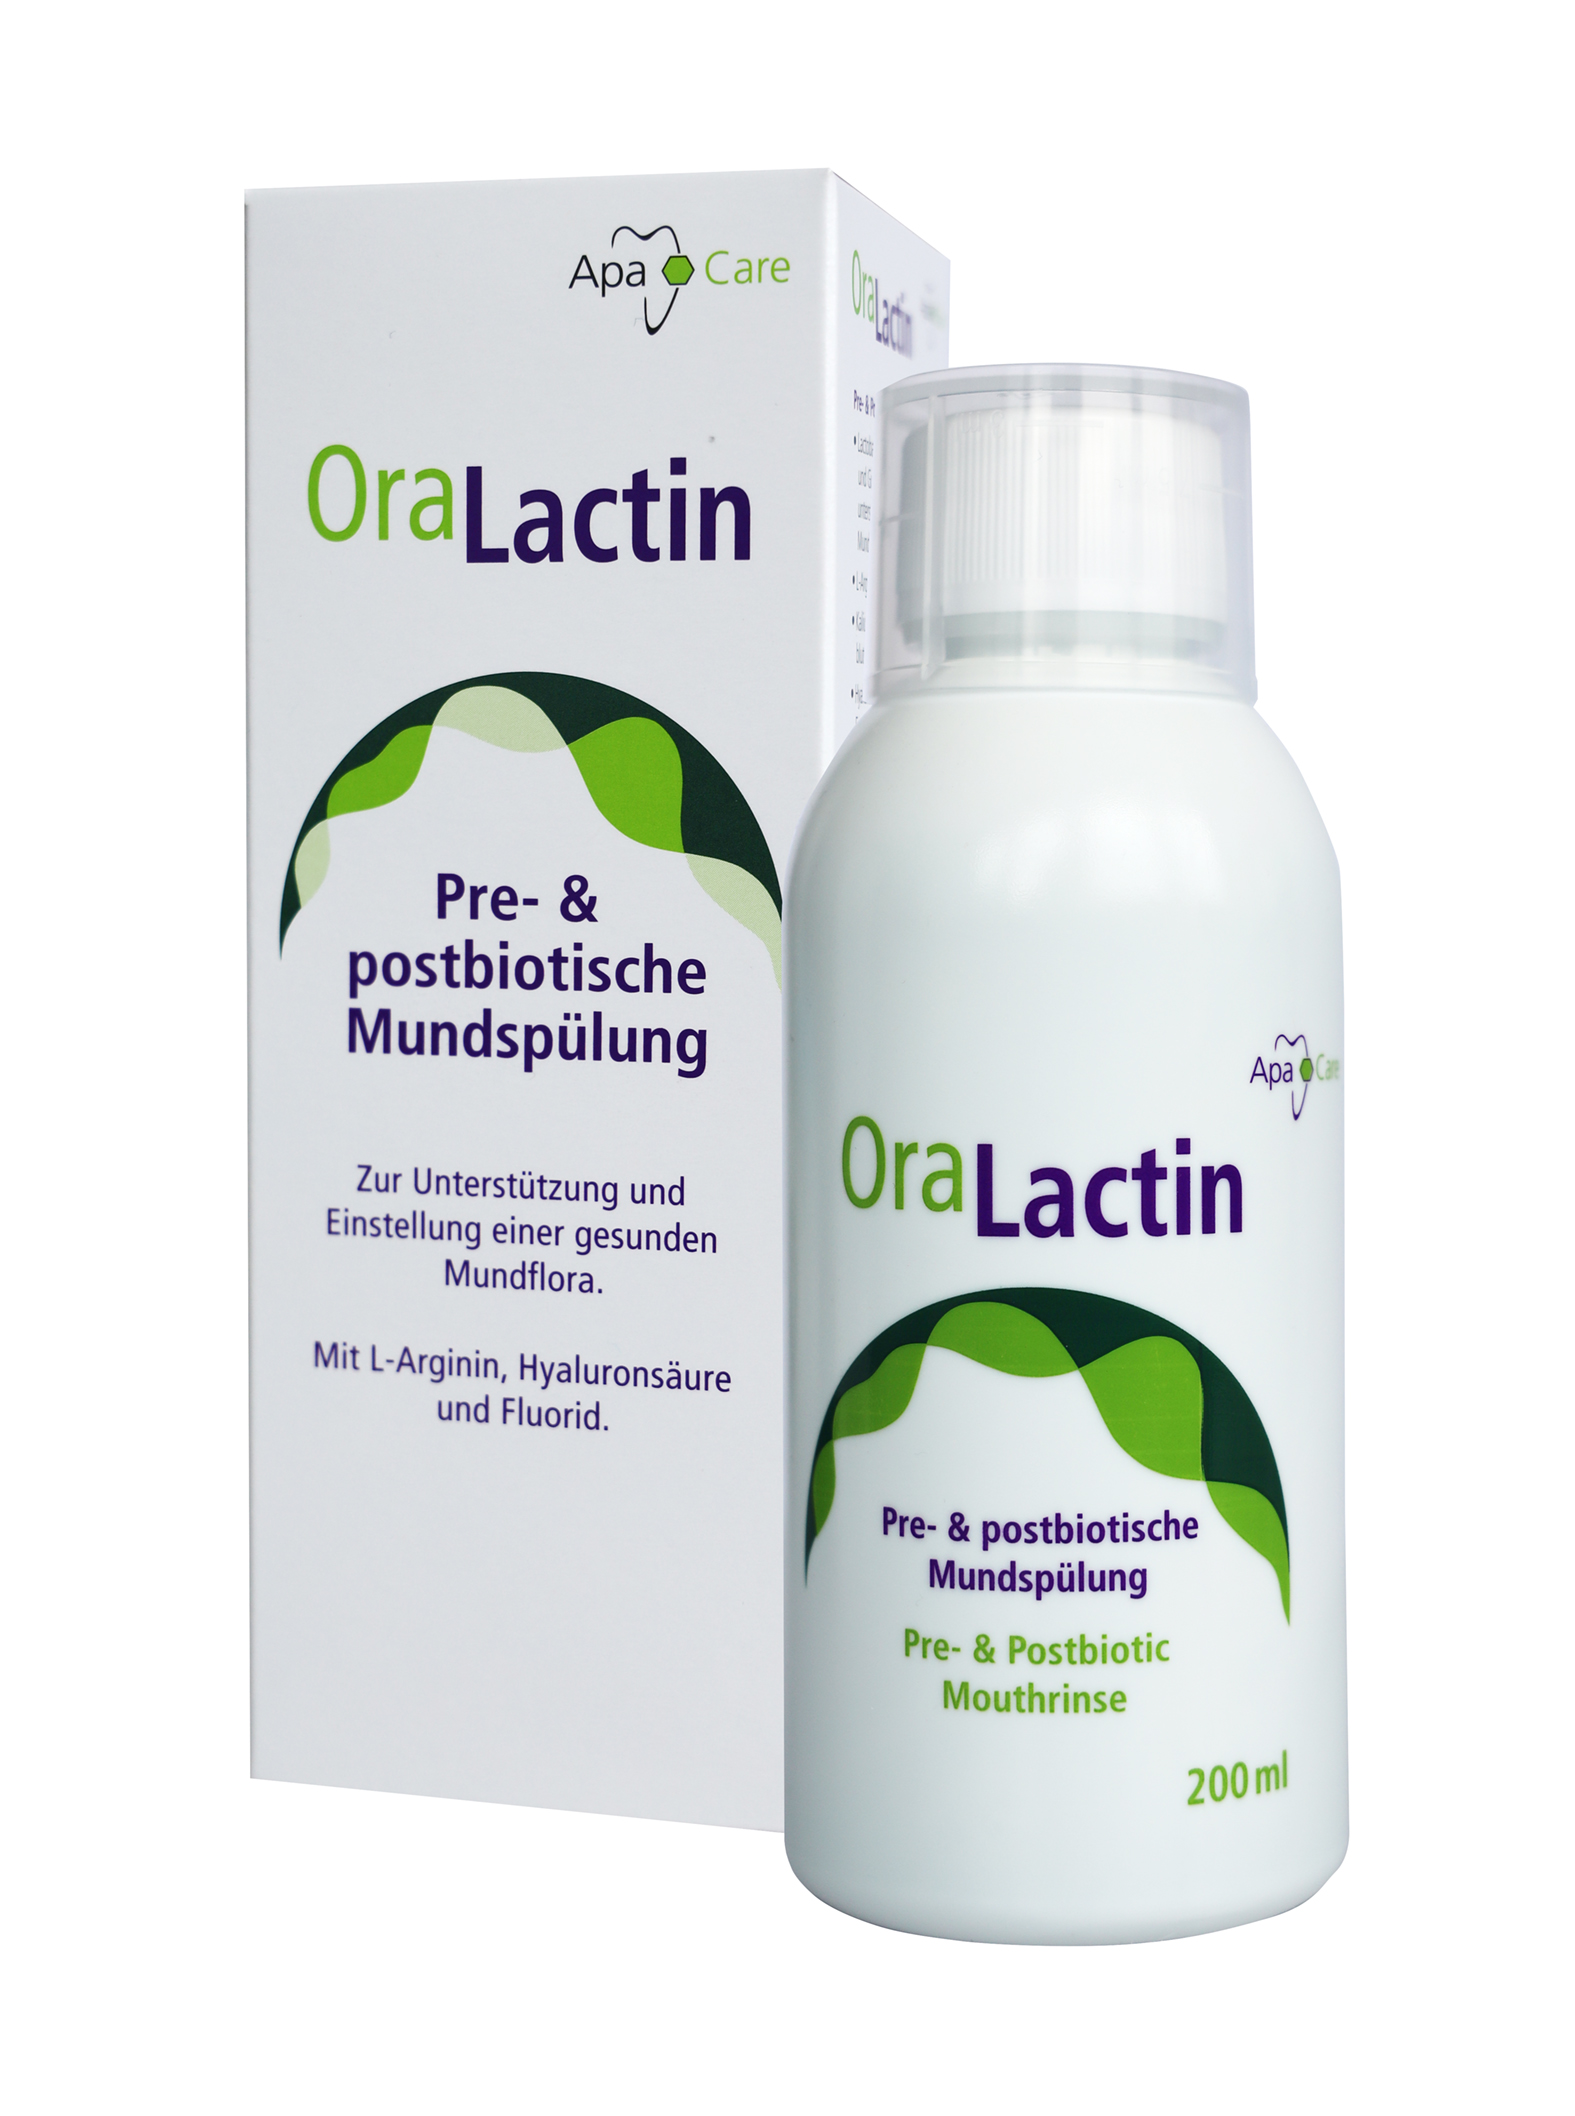 APACARE OraLactin postbiotyczny płyn do płukania jamy ustnej